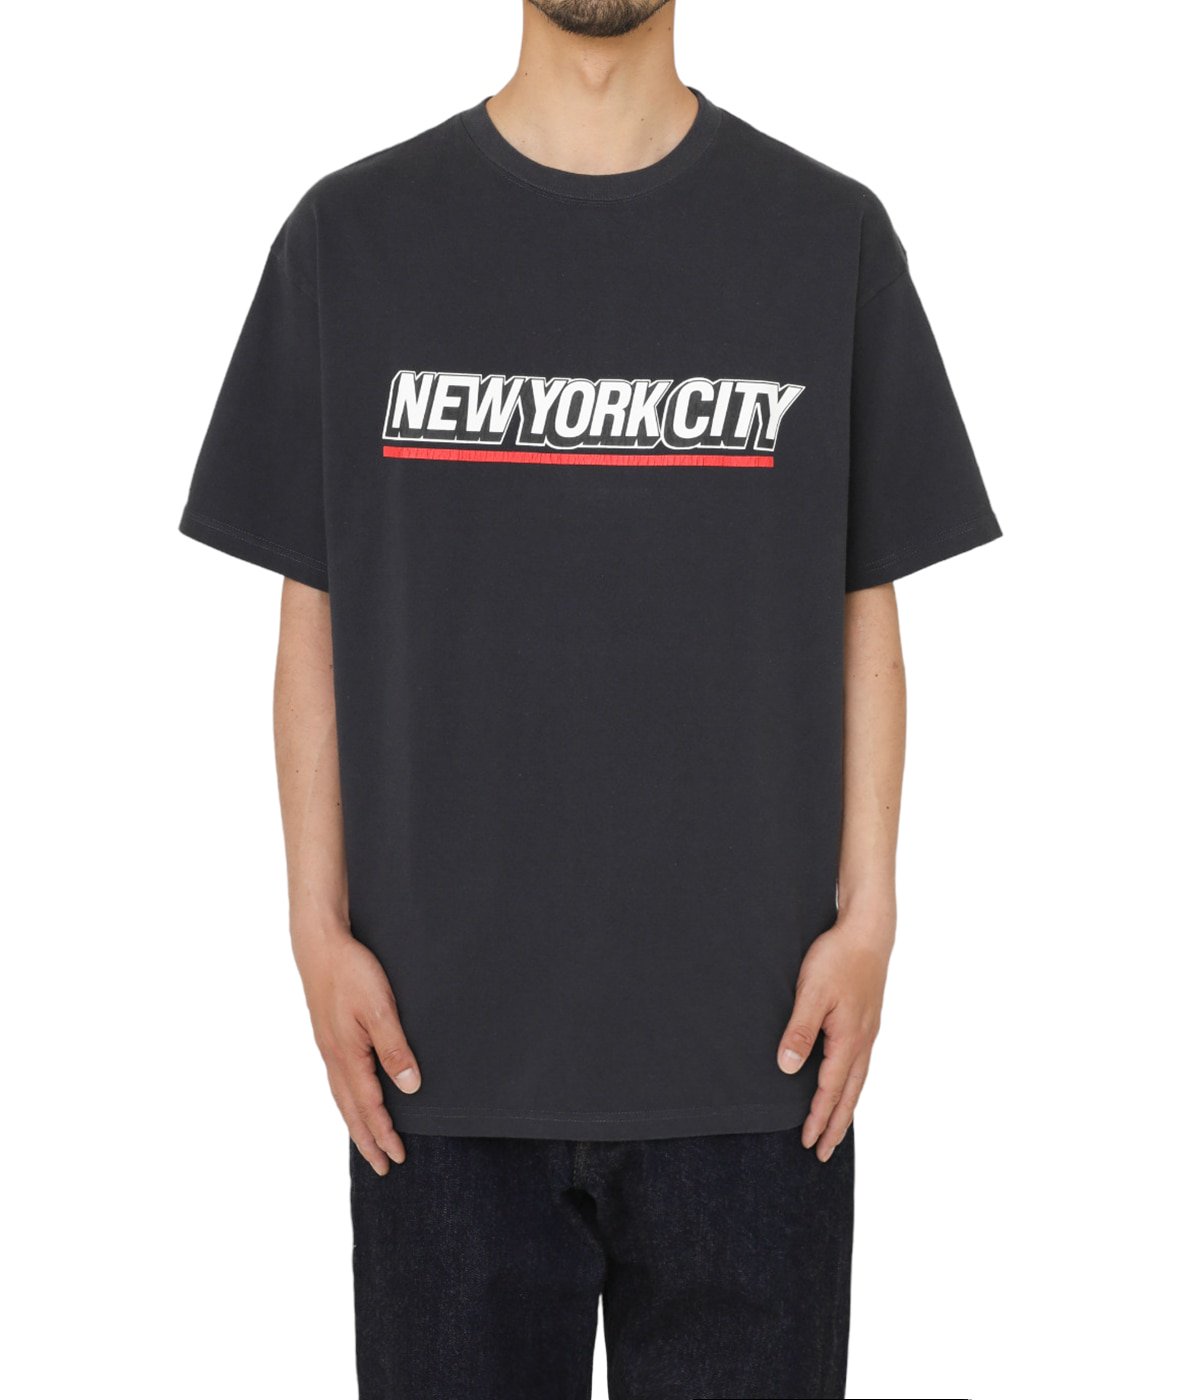 ジャクソンマティスJACKSON MATISSE 2019SS NEW YORK Tシャツ新品【MTSA67729】